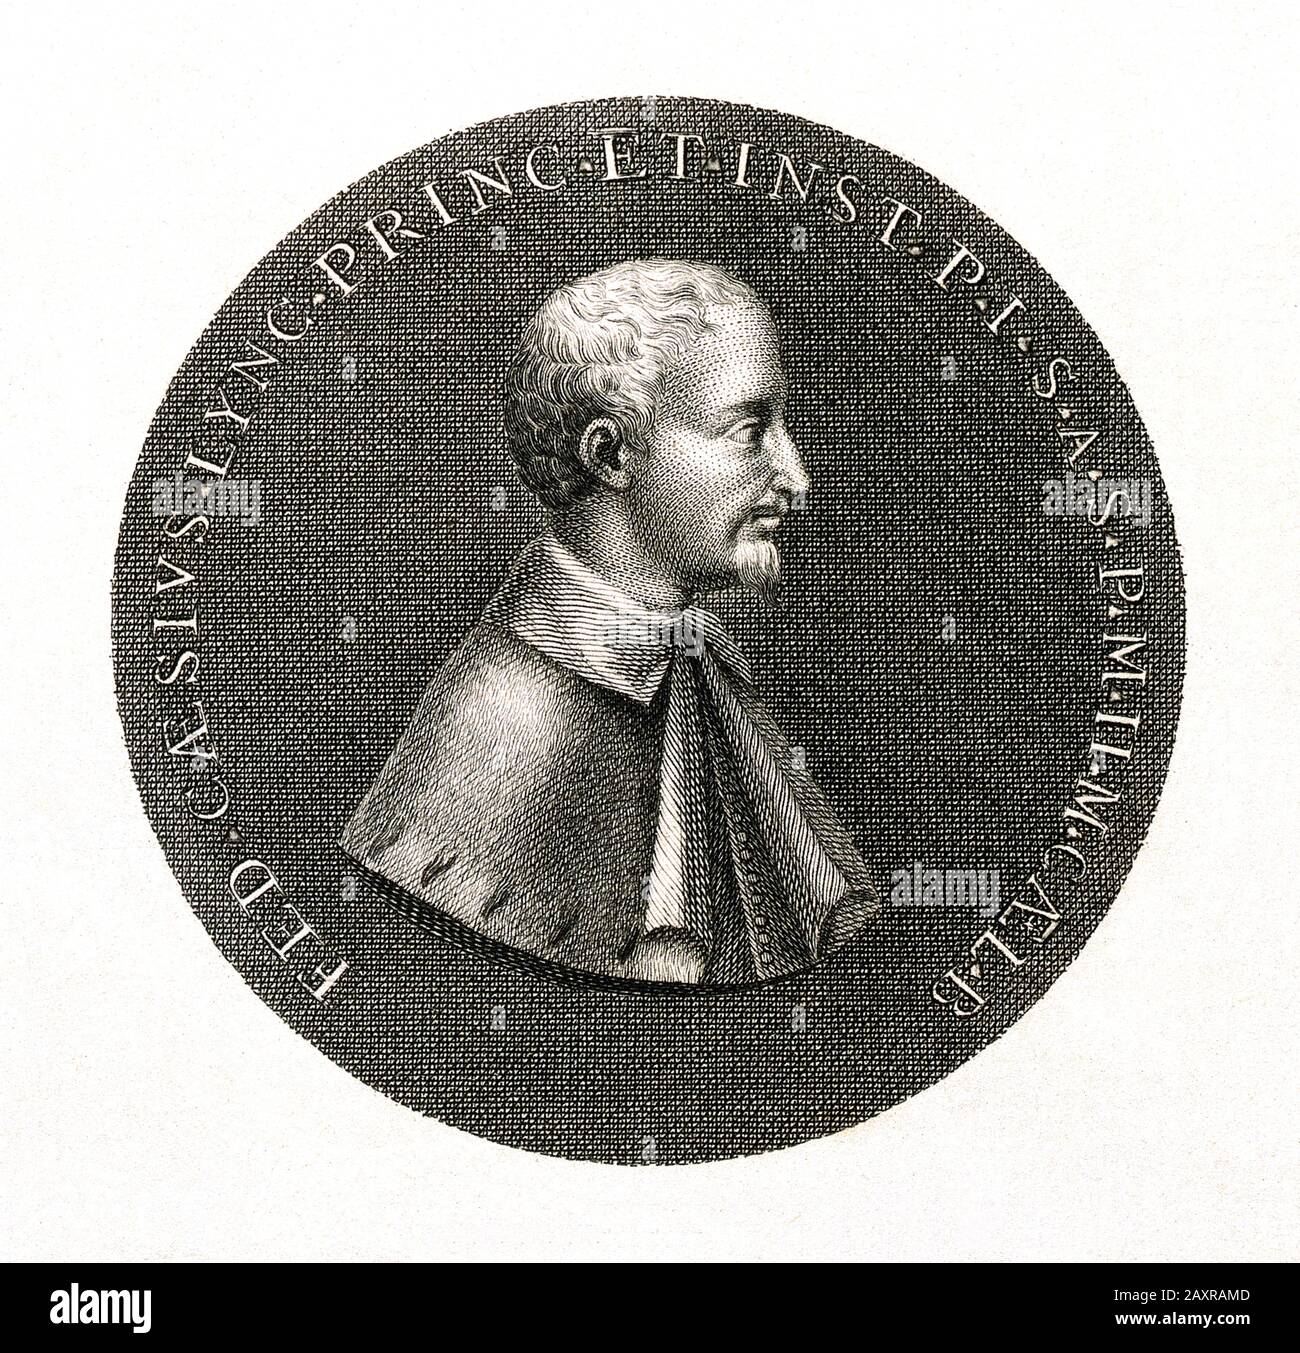 1630 ca , Roma, ITALIA : incisione di fronte ad una medaglia dedicata A FEDERICO Angelo CESI Duca di ACQUASPARTA ( 1585 - 1630 ), Principe di Sant'angelo e San Polo , marchese di Monticelli . Scienziato italiano, naturalista e fondatore dell'Accademia dei Lincei ( Accademia Dei Linci ) Nel 1603 .- SCIENZA - SCIENZA - ITALIA - FEDERIGO CESI Duca DI ACQUA SPARTA - Profilo - Nobiltà italiana - NOBILTÀ - ritratto - rito - barba - colletto - colletto - NOBILI - medaglione - incisione - STORIA - FOTO STORICHE - FOTO STORICHE - MEDAGLIA - SCENZIATO - MEDICO - MEDICINA - MEDICI Foto Stock